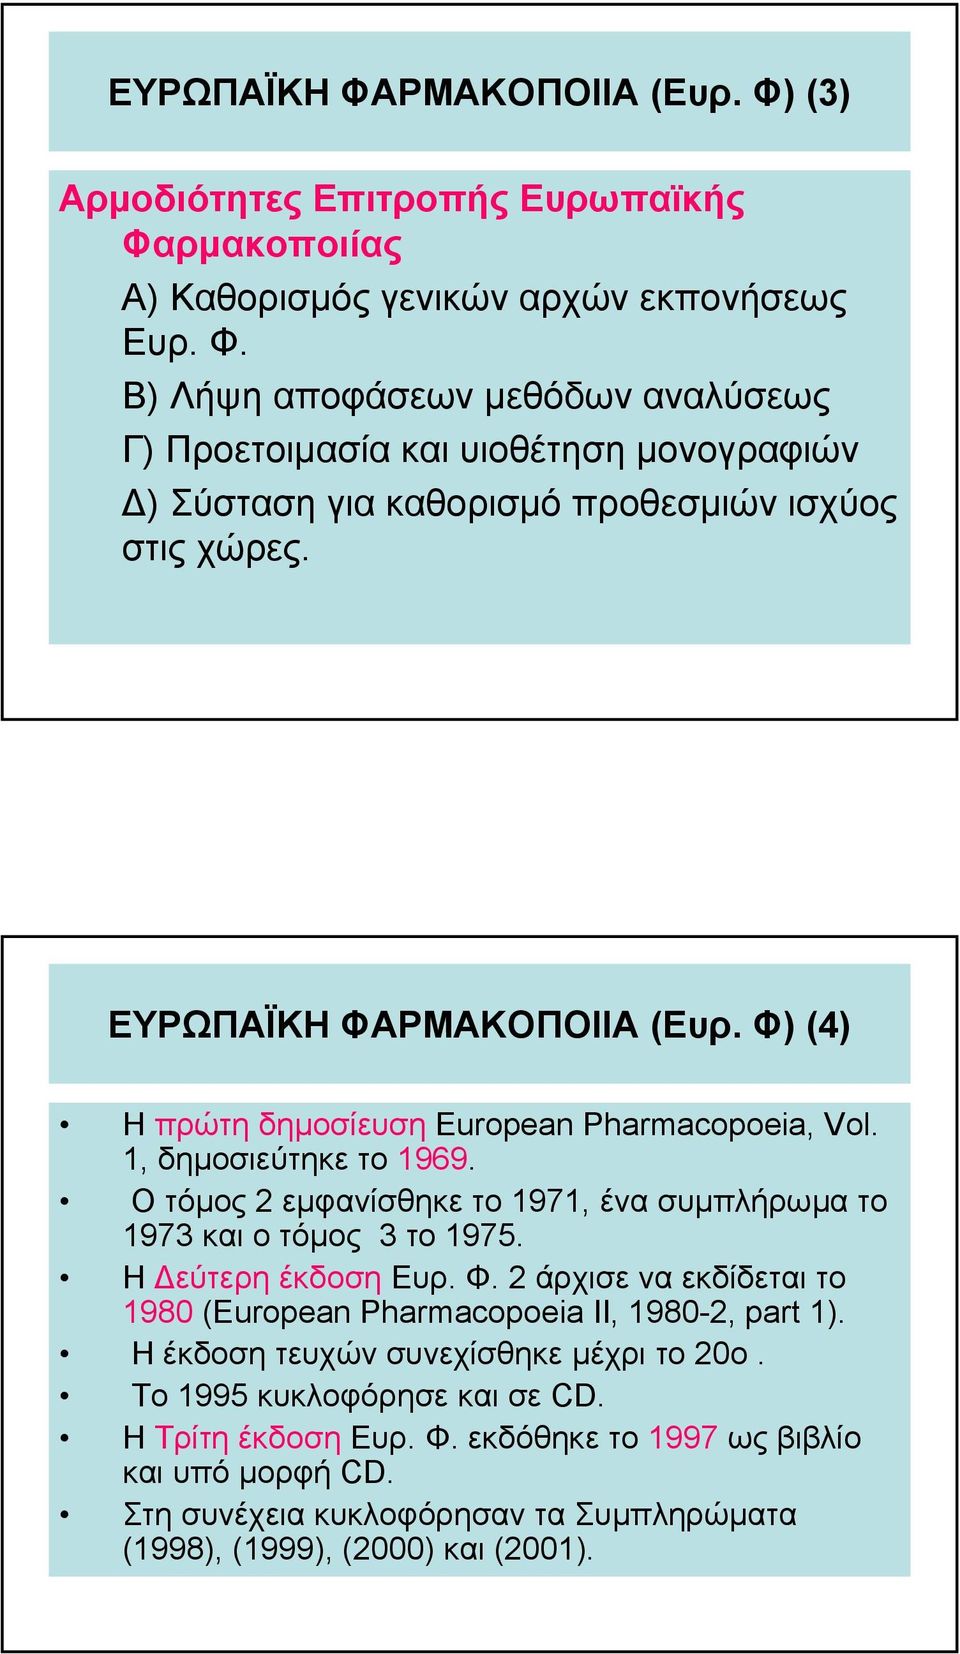 Η εύτερη έκδοση Ευρ. Φ. 2 άρχισε να εκδίδεται το 1980 (European Pharmacopoeia II, 1980-2, part 1). Η έκδοση τευχών συνεχίσθηκε µέχρι το 20ο. Το 1995 κυκλοφόρησε και σε CD. Η Τρίτη έκδοση Ευρ.